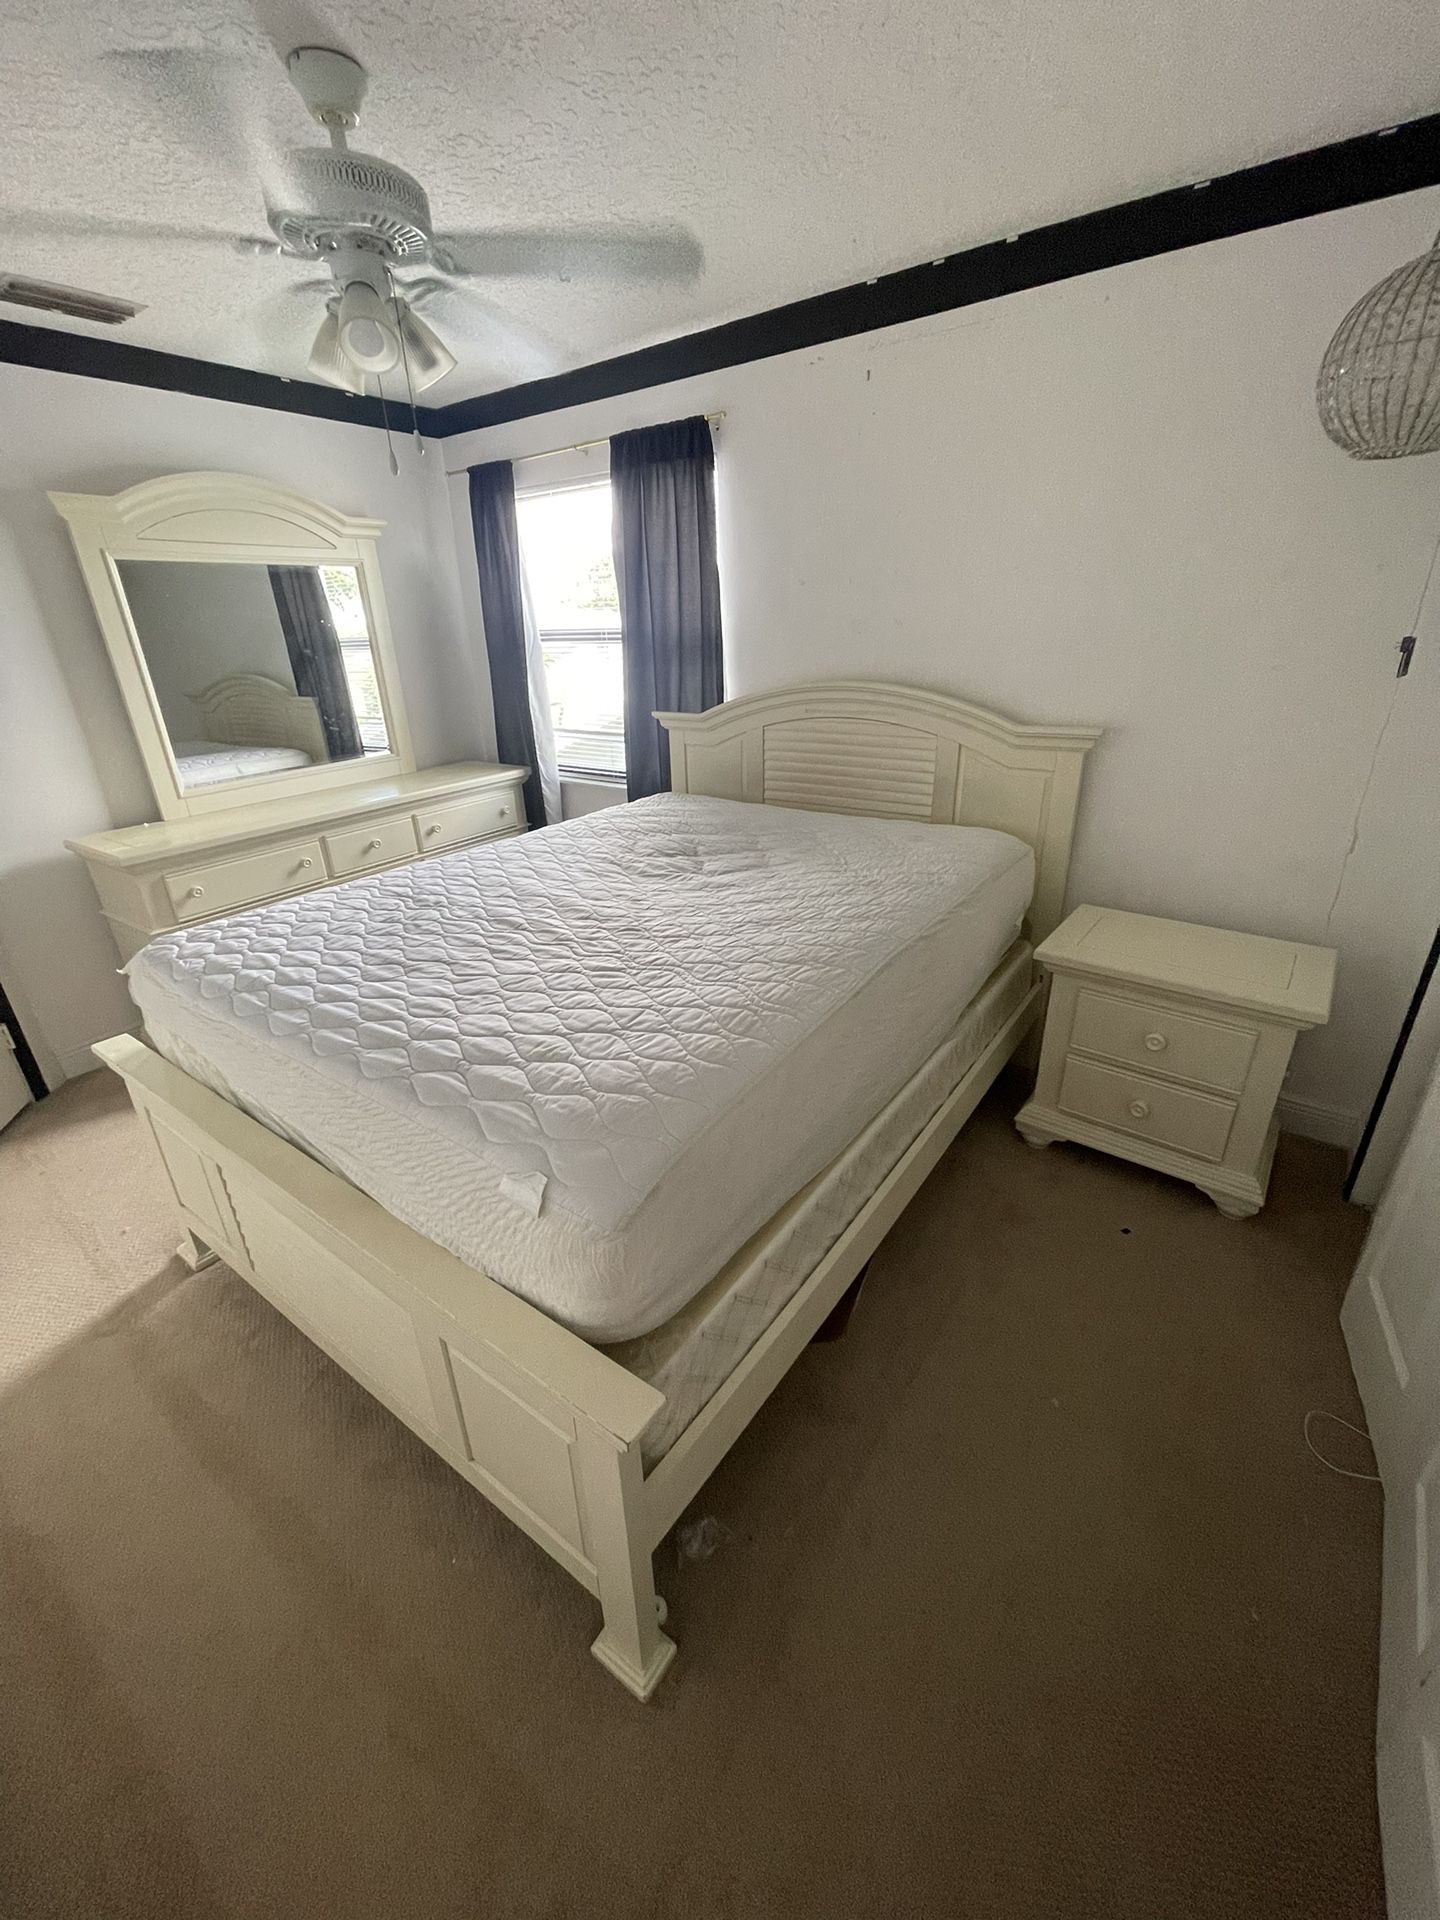 queen sized bedroom set